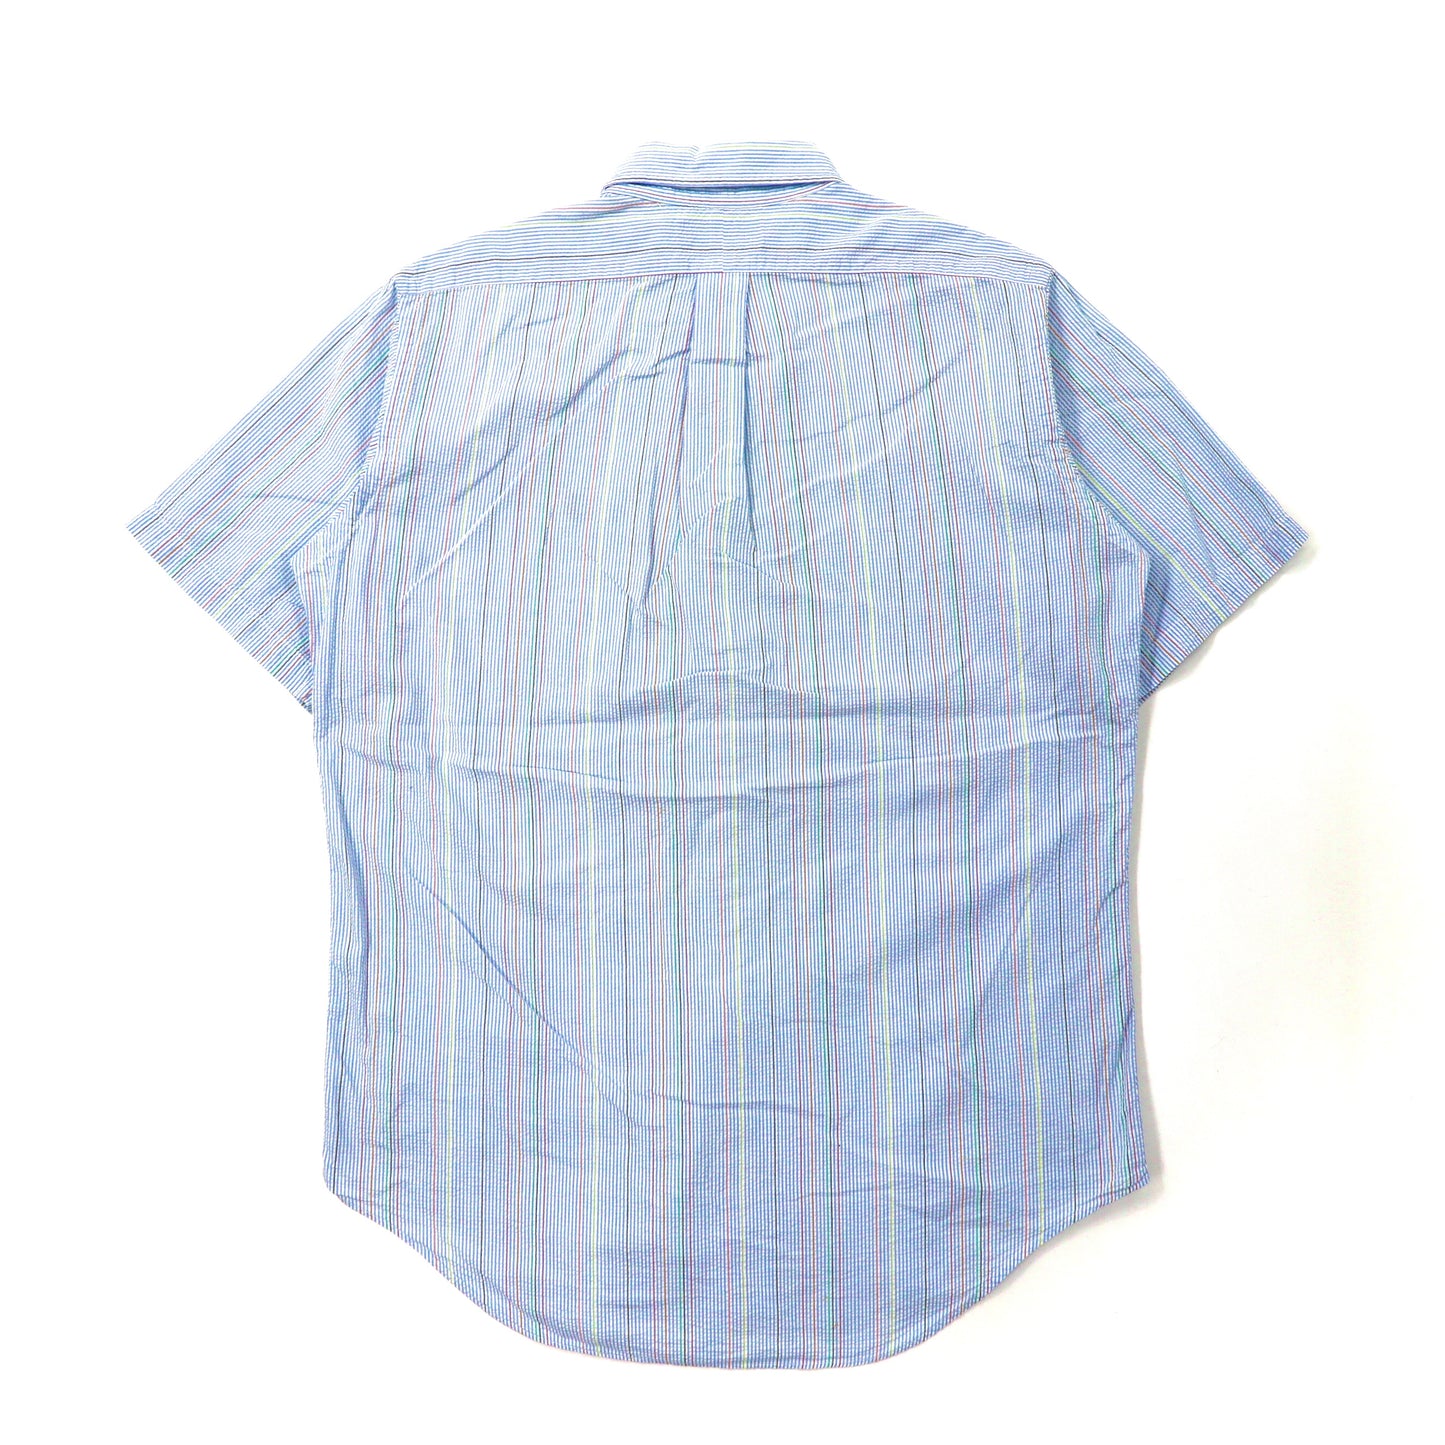 Polo by Ralph Lauren 半袖ボタンダウンシャツ L ブルー ストライプ  コットン シアサッカー スモールポニー刺繍